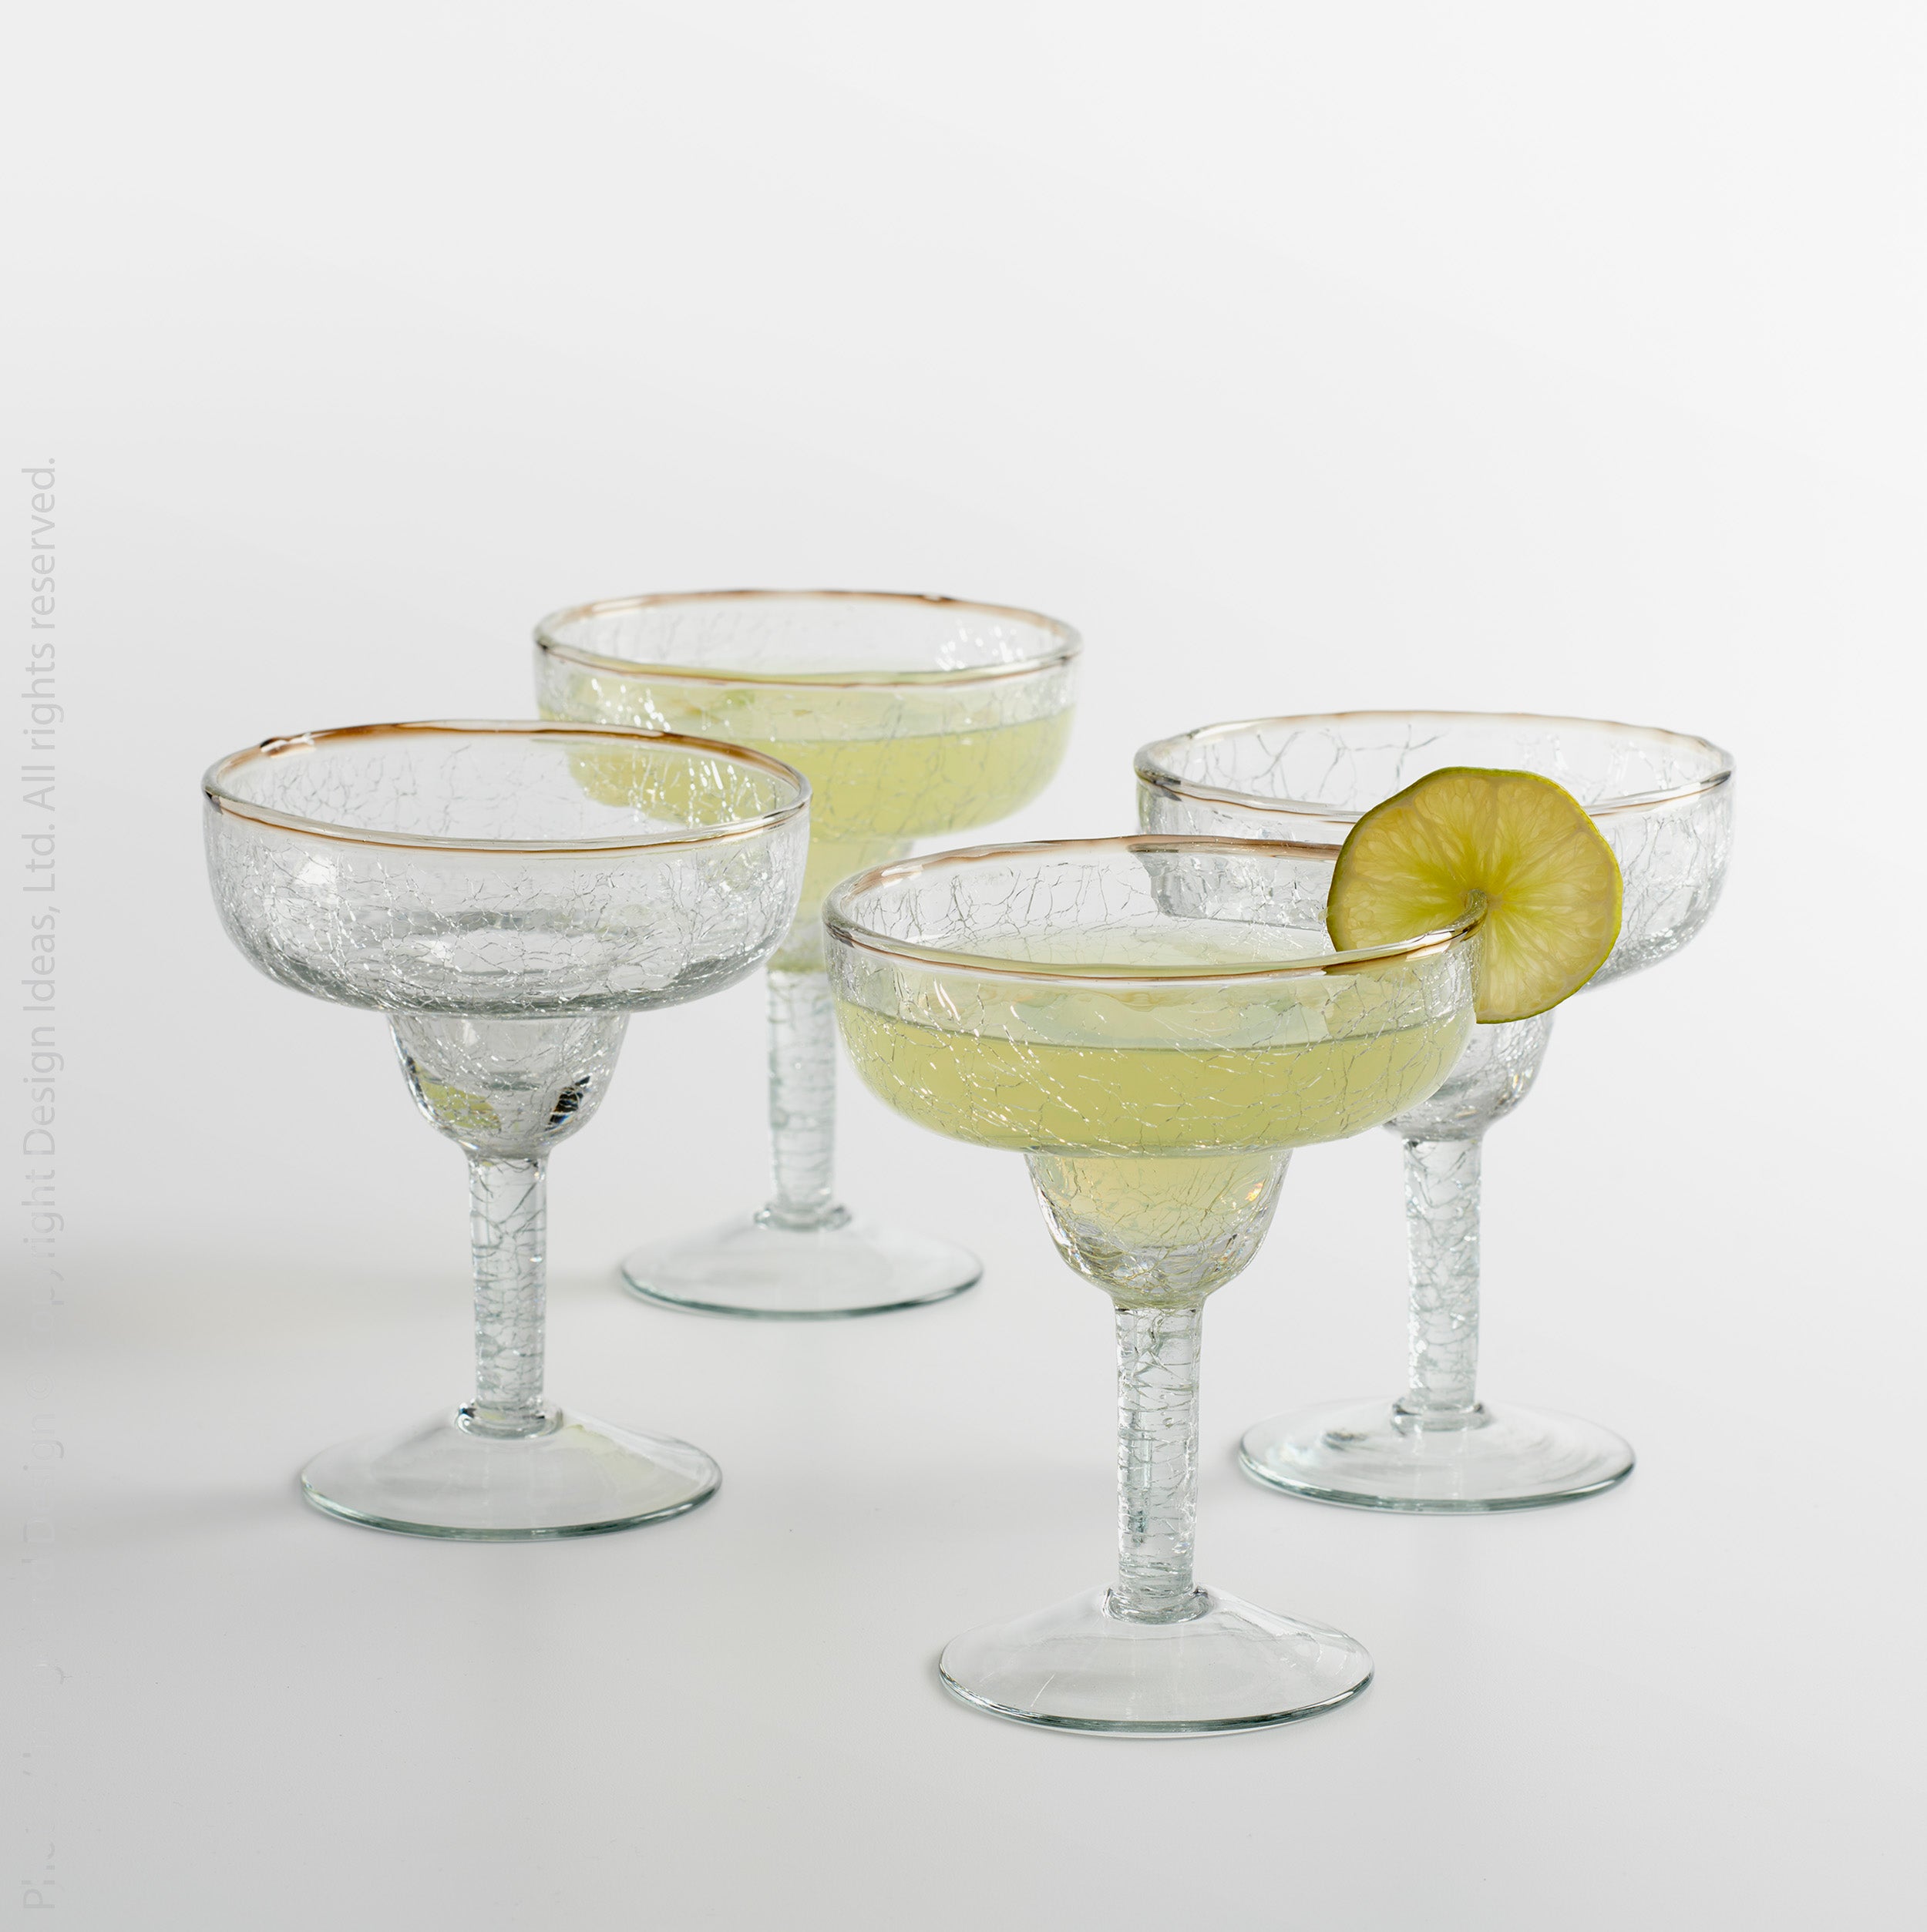 Elegant Margarita Glass Set ( 6 Pieces)